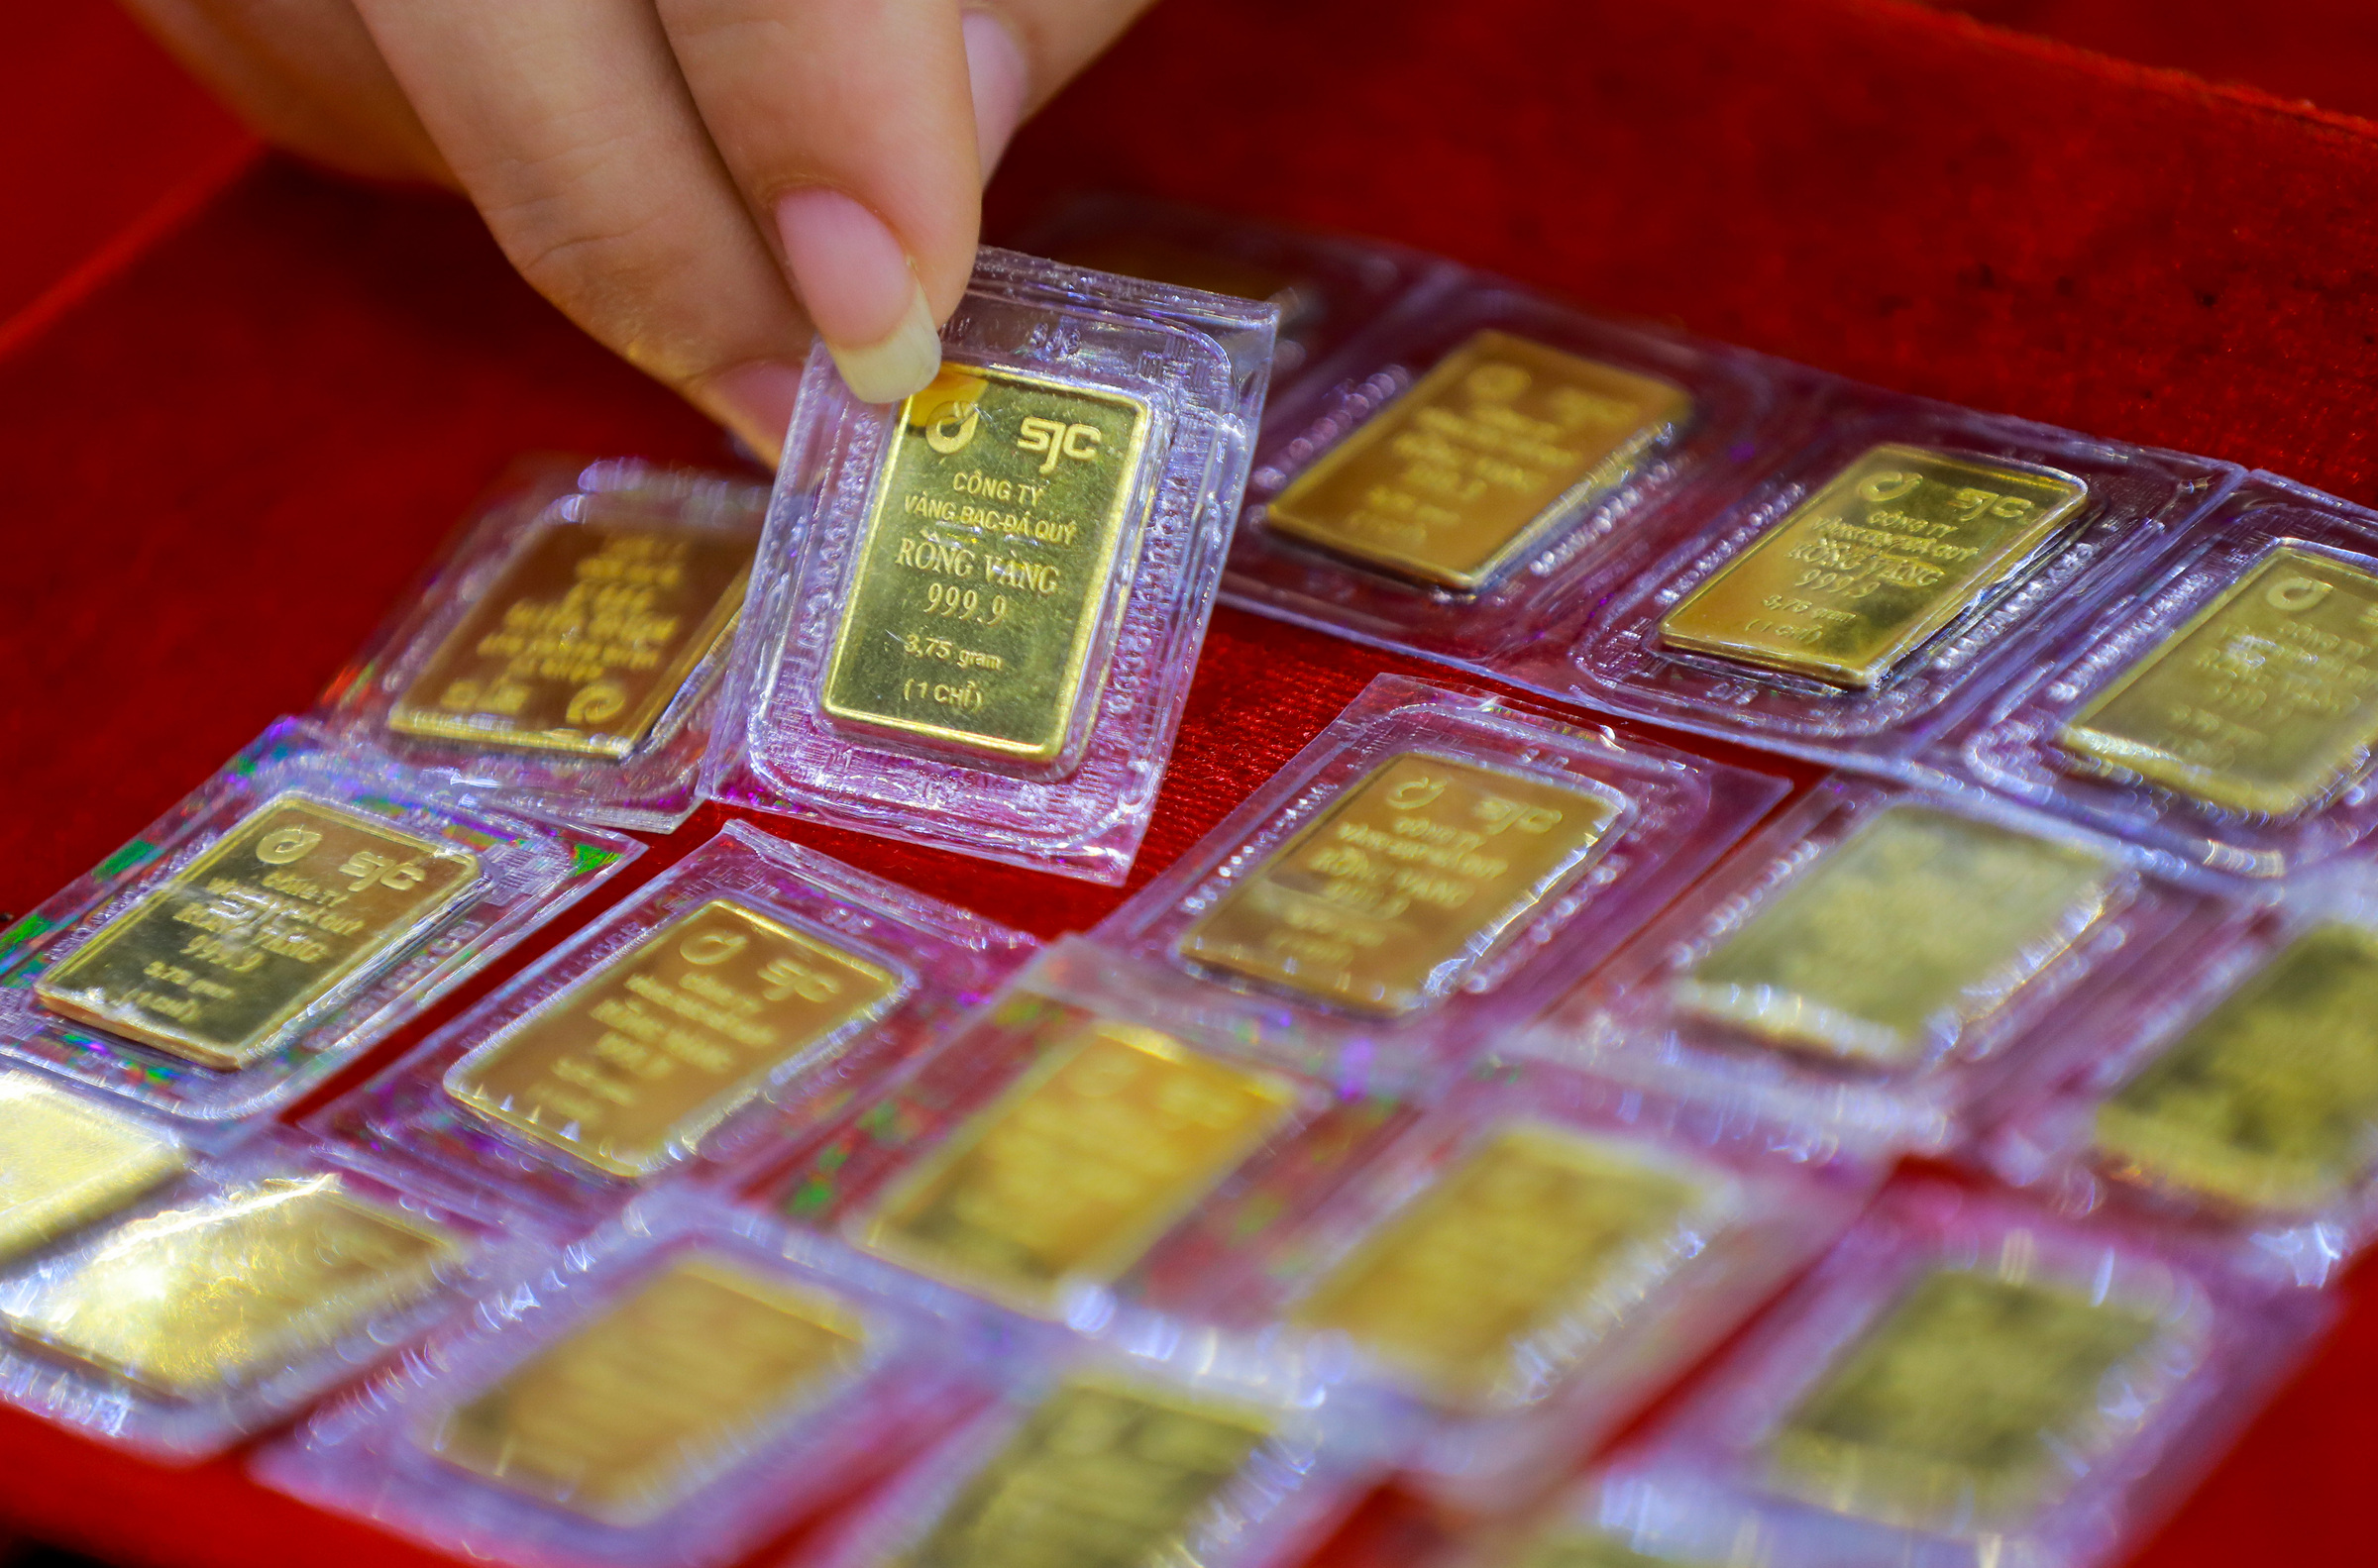 Vàng SJC được bày bán ở cửa hàng quận Bình Thạnh, TP HCM năm 2020 khi giá vàng chỉ hơn 49 triệu đồng một lượng. Ảnh: Quỳnh Trần